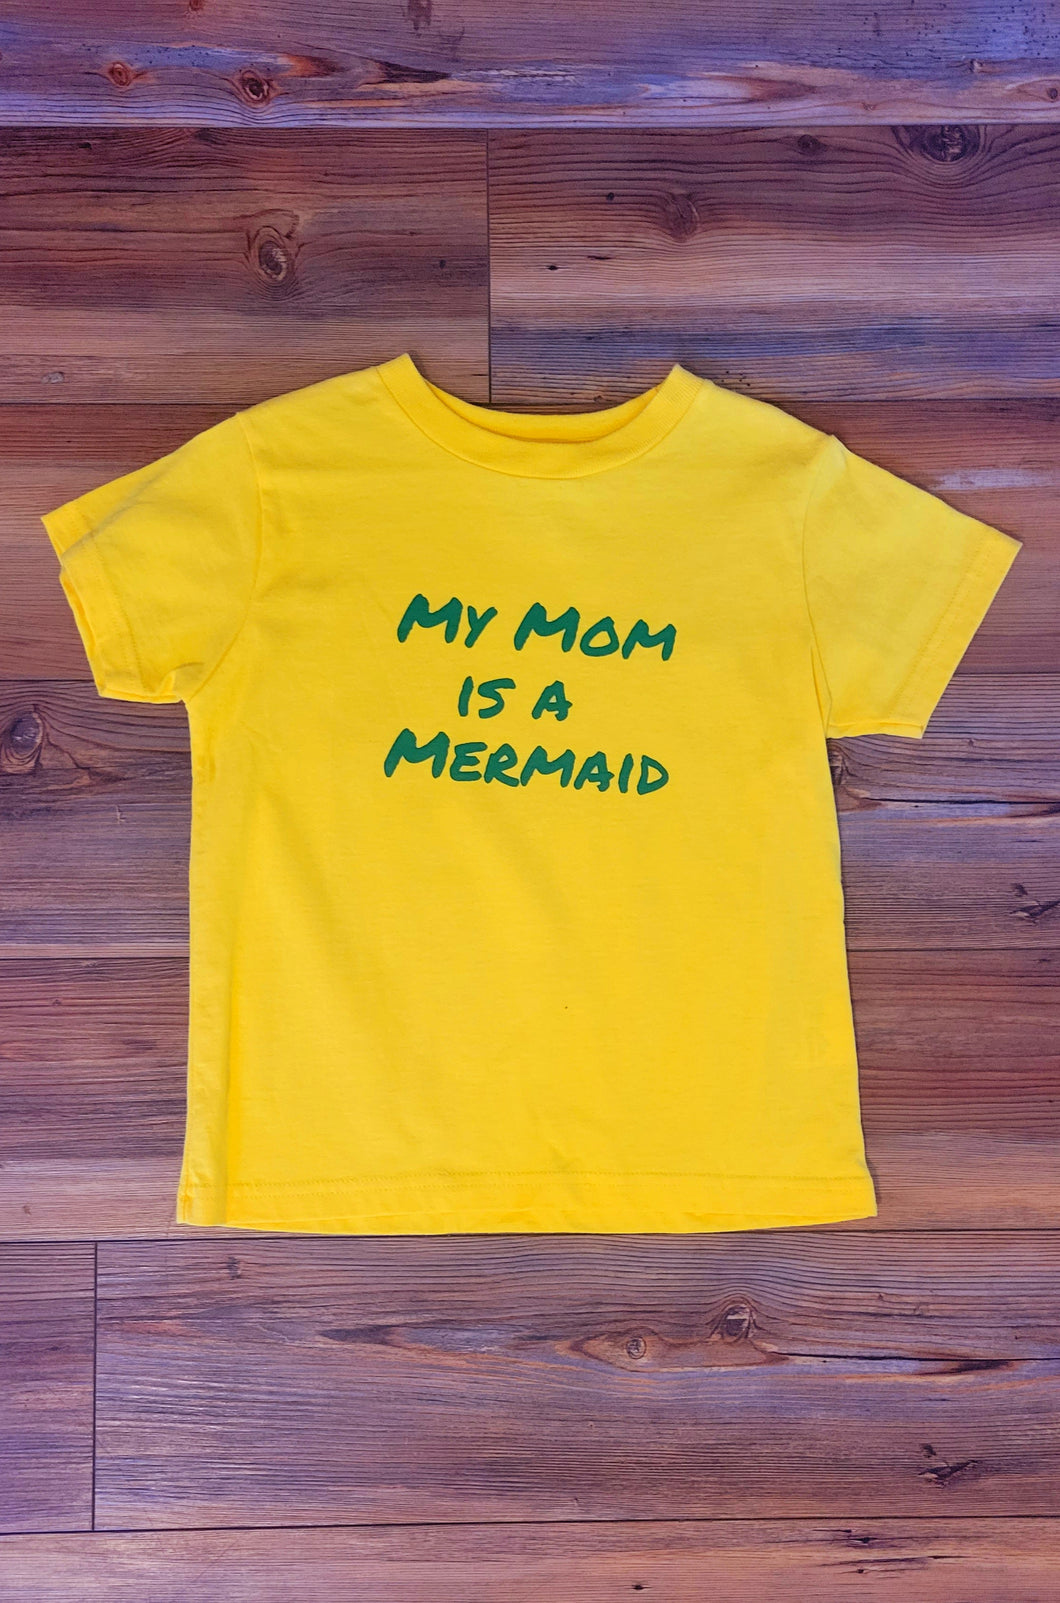 My mom is a mermaid tee